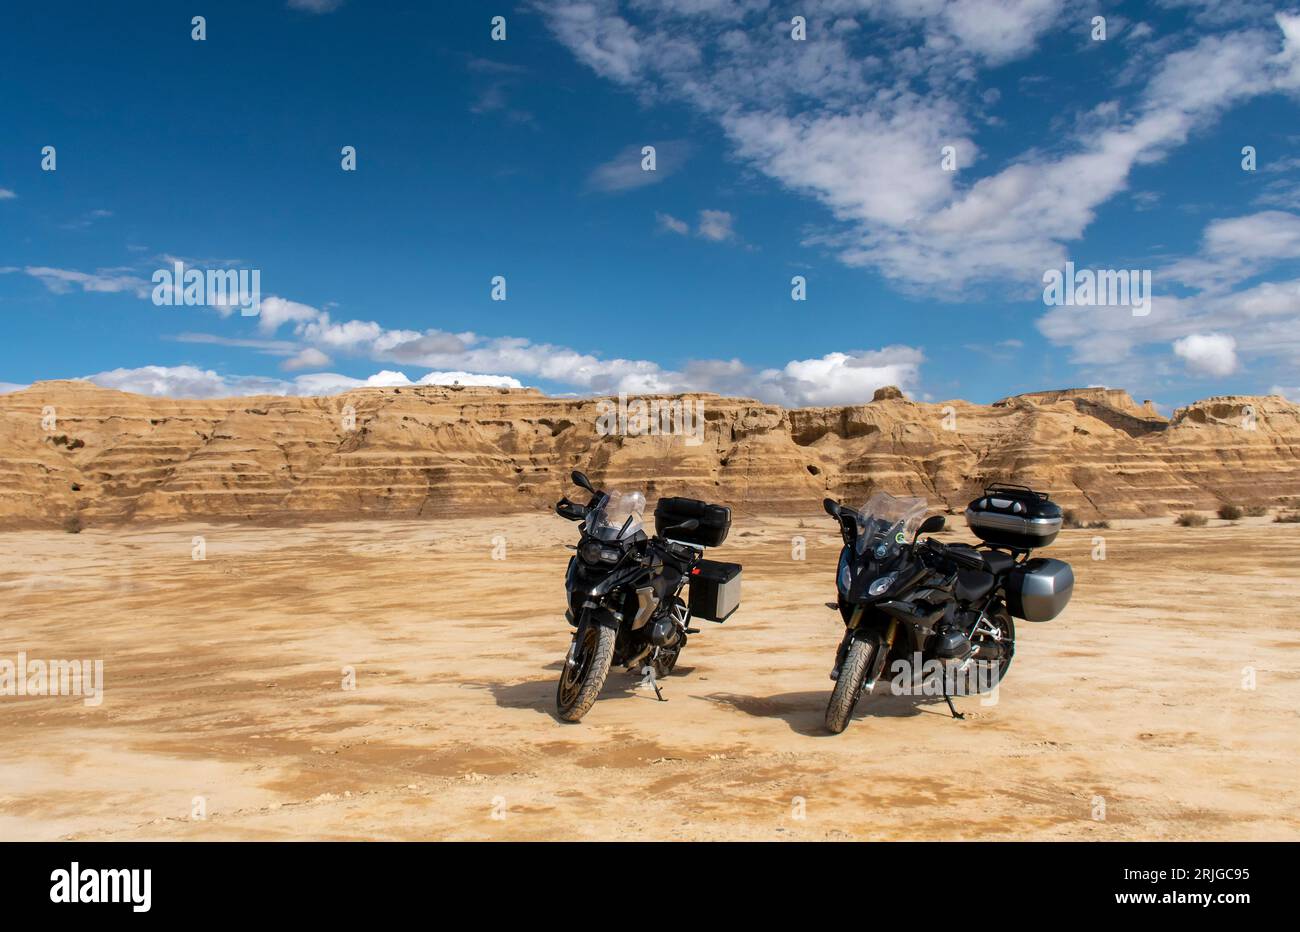 "Scopri paesaggi di montagna mozzafiato e avventure con la nostra impressionante coppia di motociclette a grande cilindrata nel mezzo delle Bardenas spagnole Foto Stock